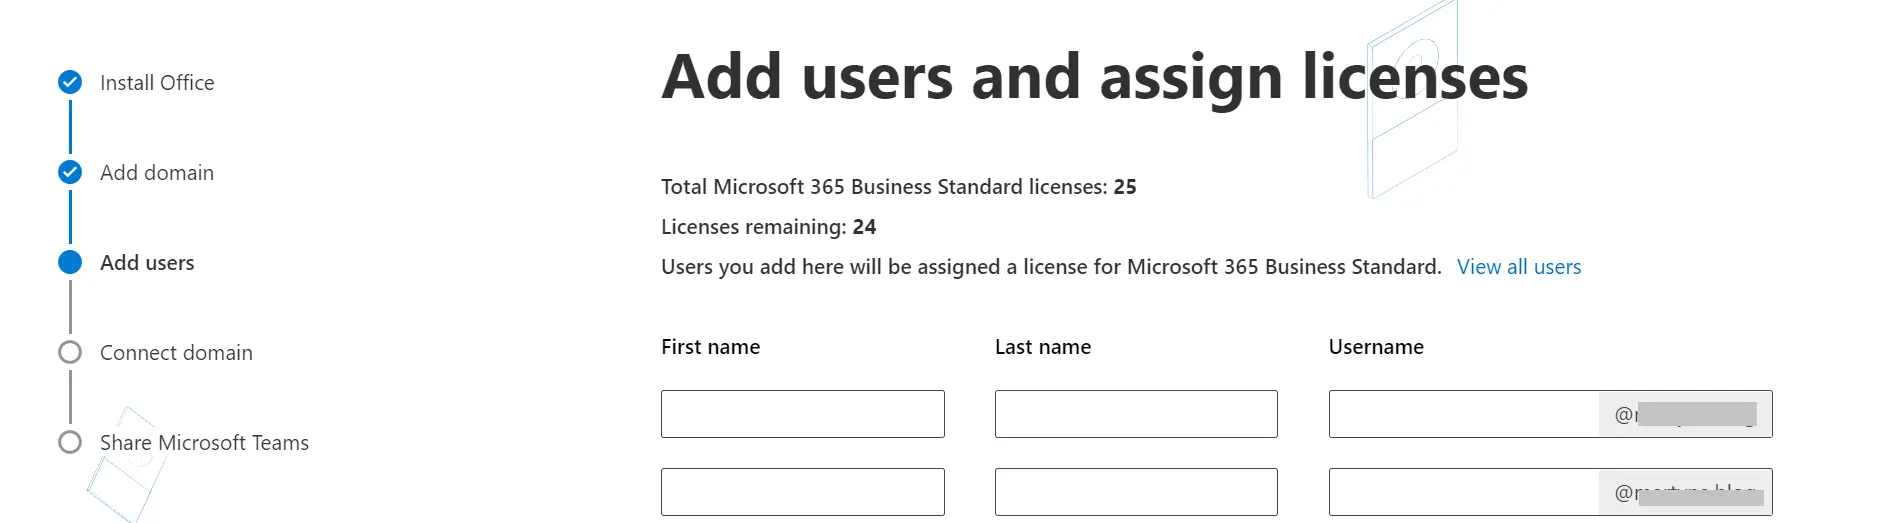 Ajout d'utilisateurs à une adresse e-mail personnalisée dans Office 365.